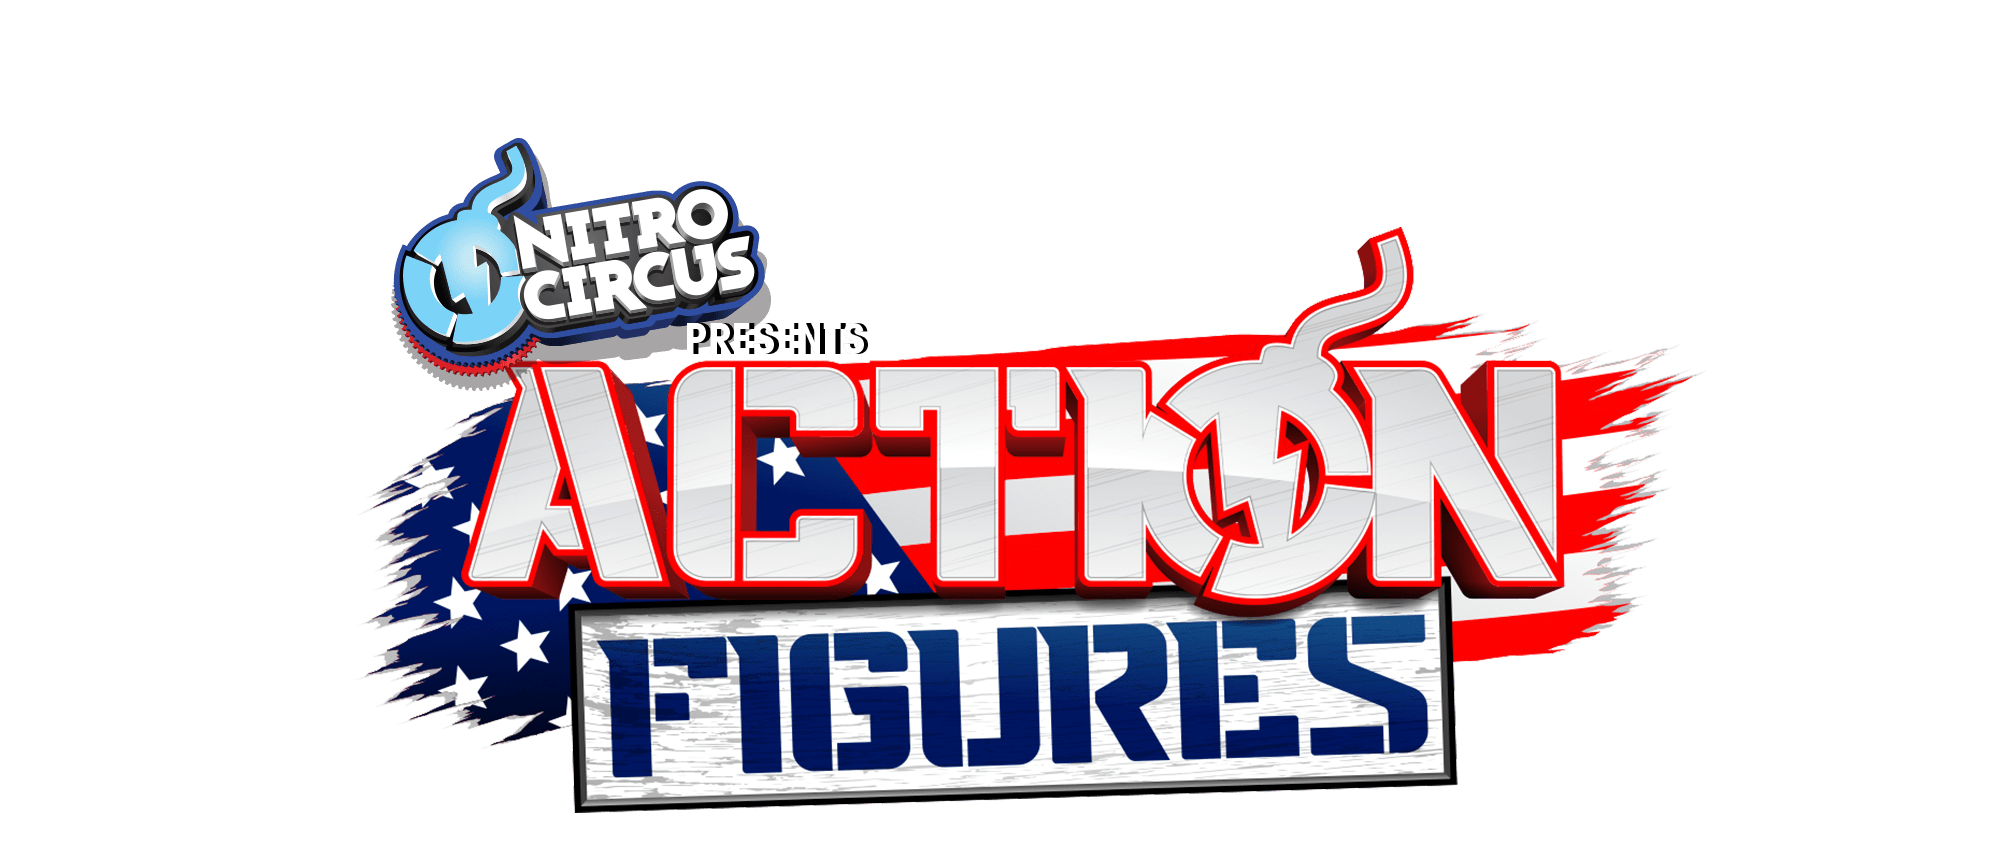 Circus clipart circus show. Nitro action figures logo